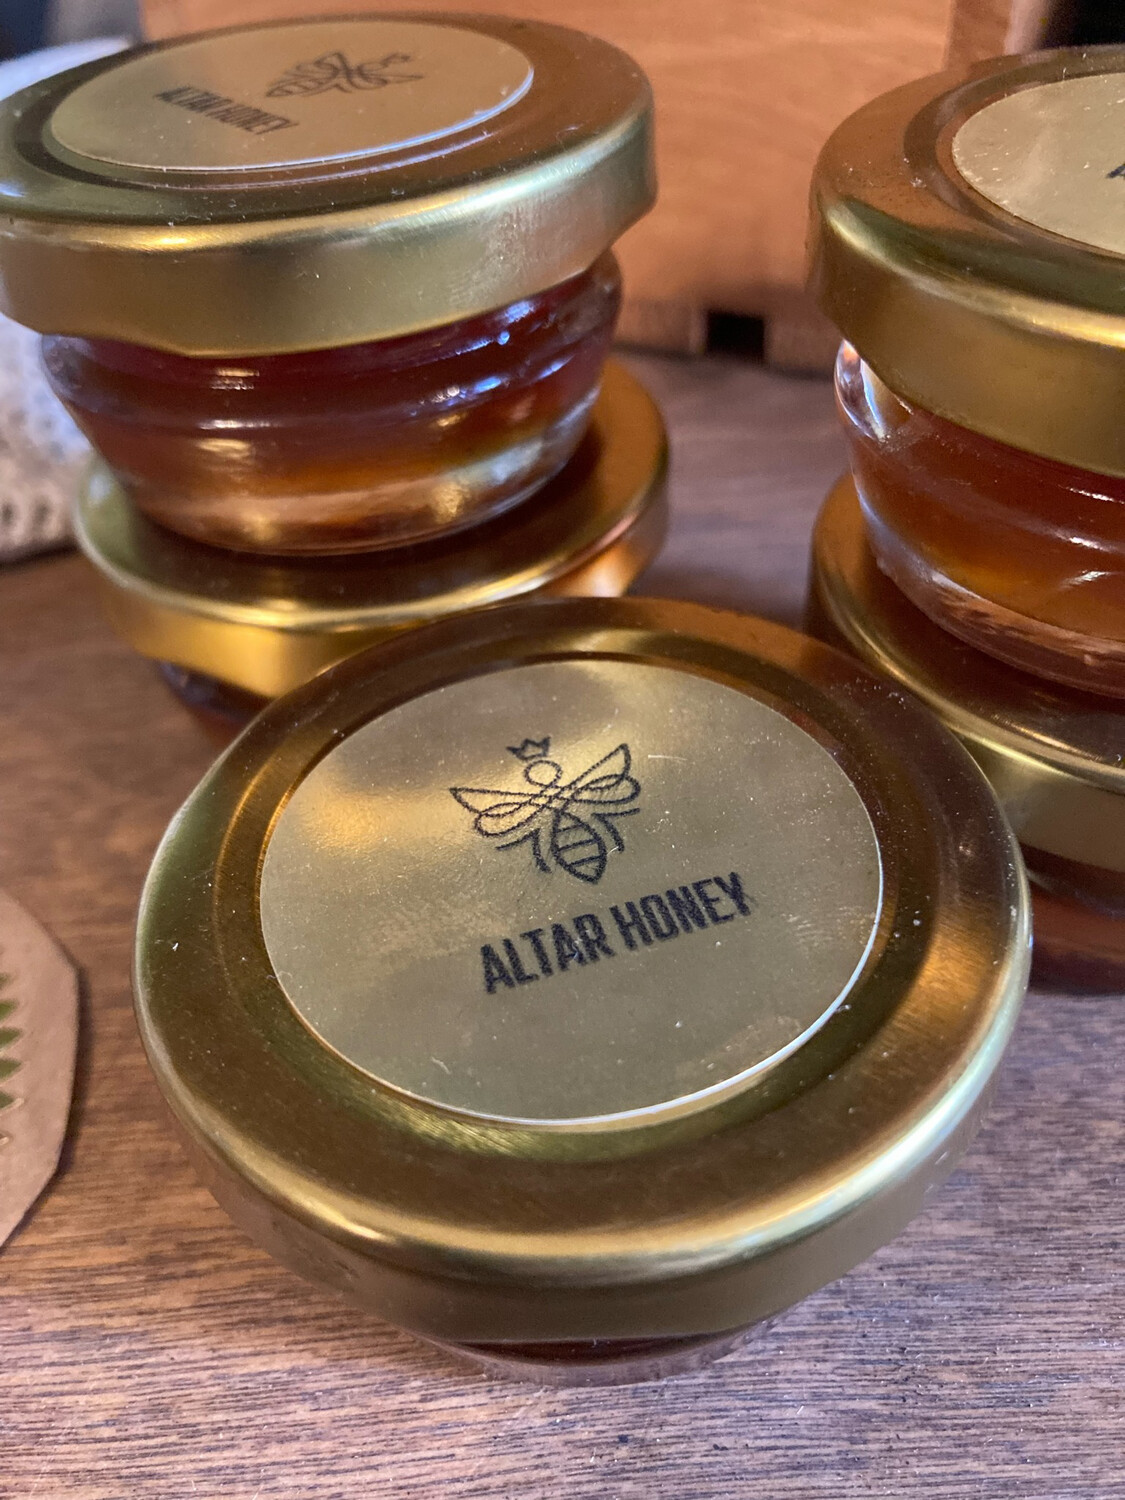 Altar Honey by Fumbling Hives